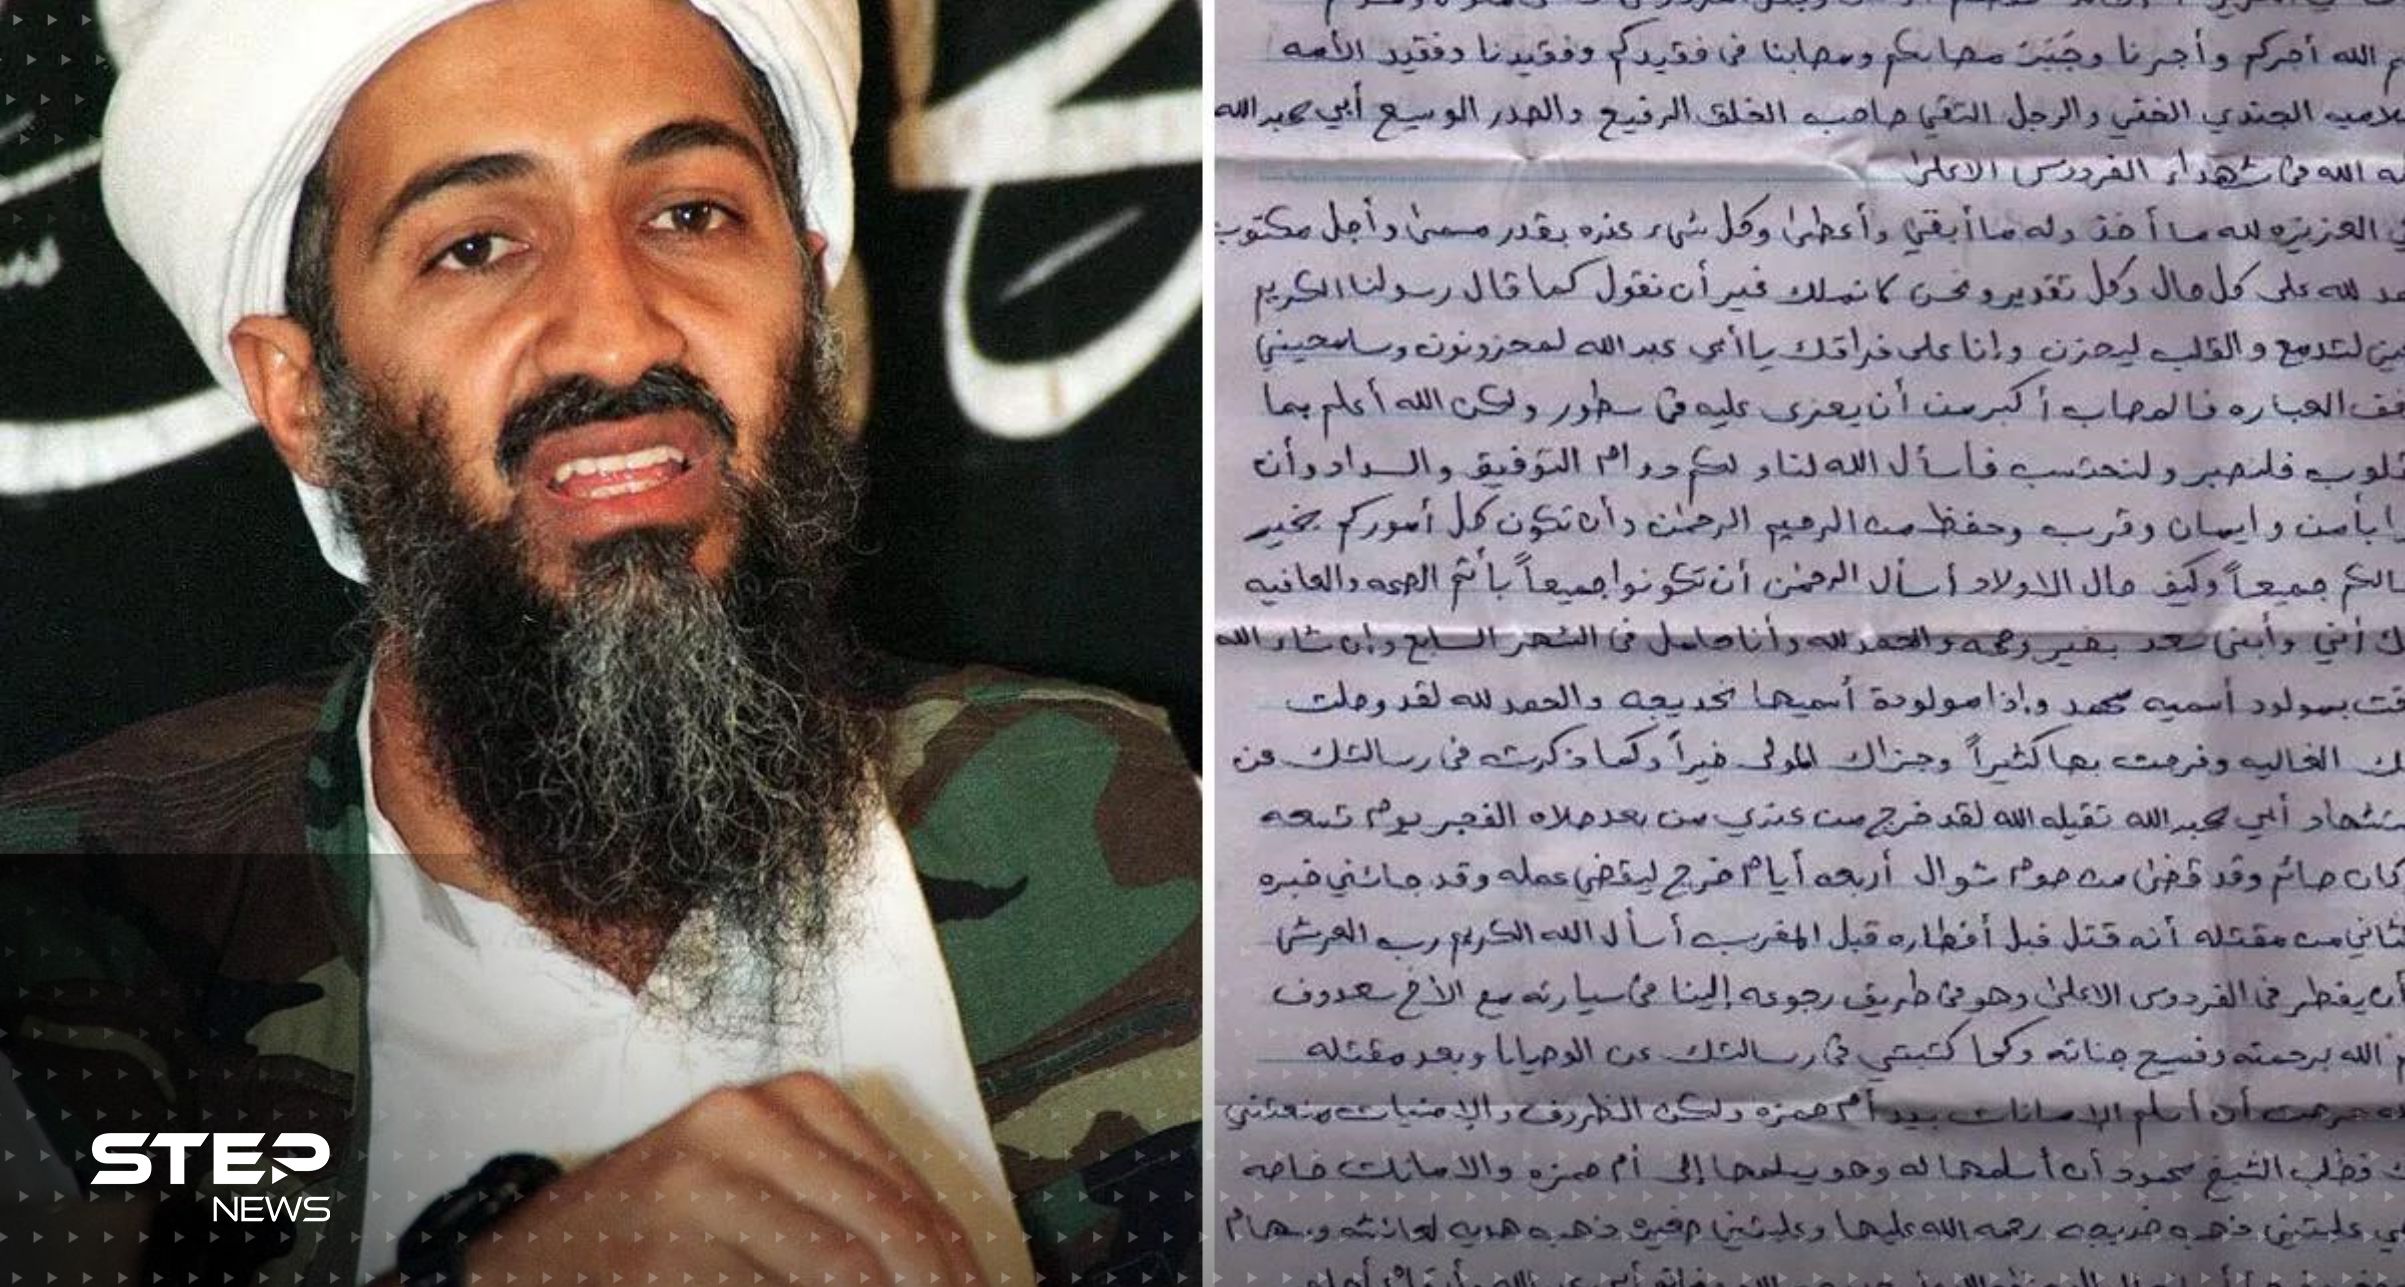 بعد انتشارها بشكل كبير على الإنترنت.. صحيفة الغارديان تحذف رسالة بن لادن إلى أمريكا